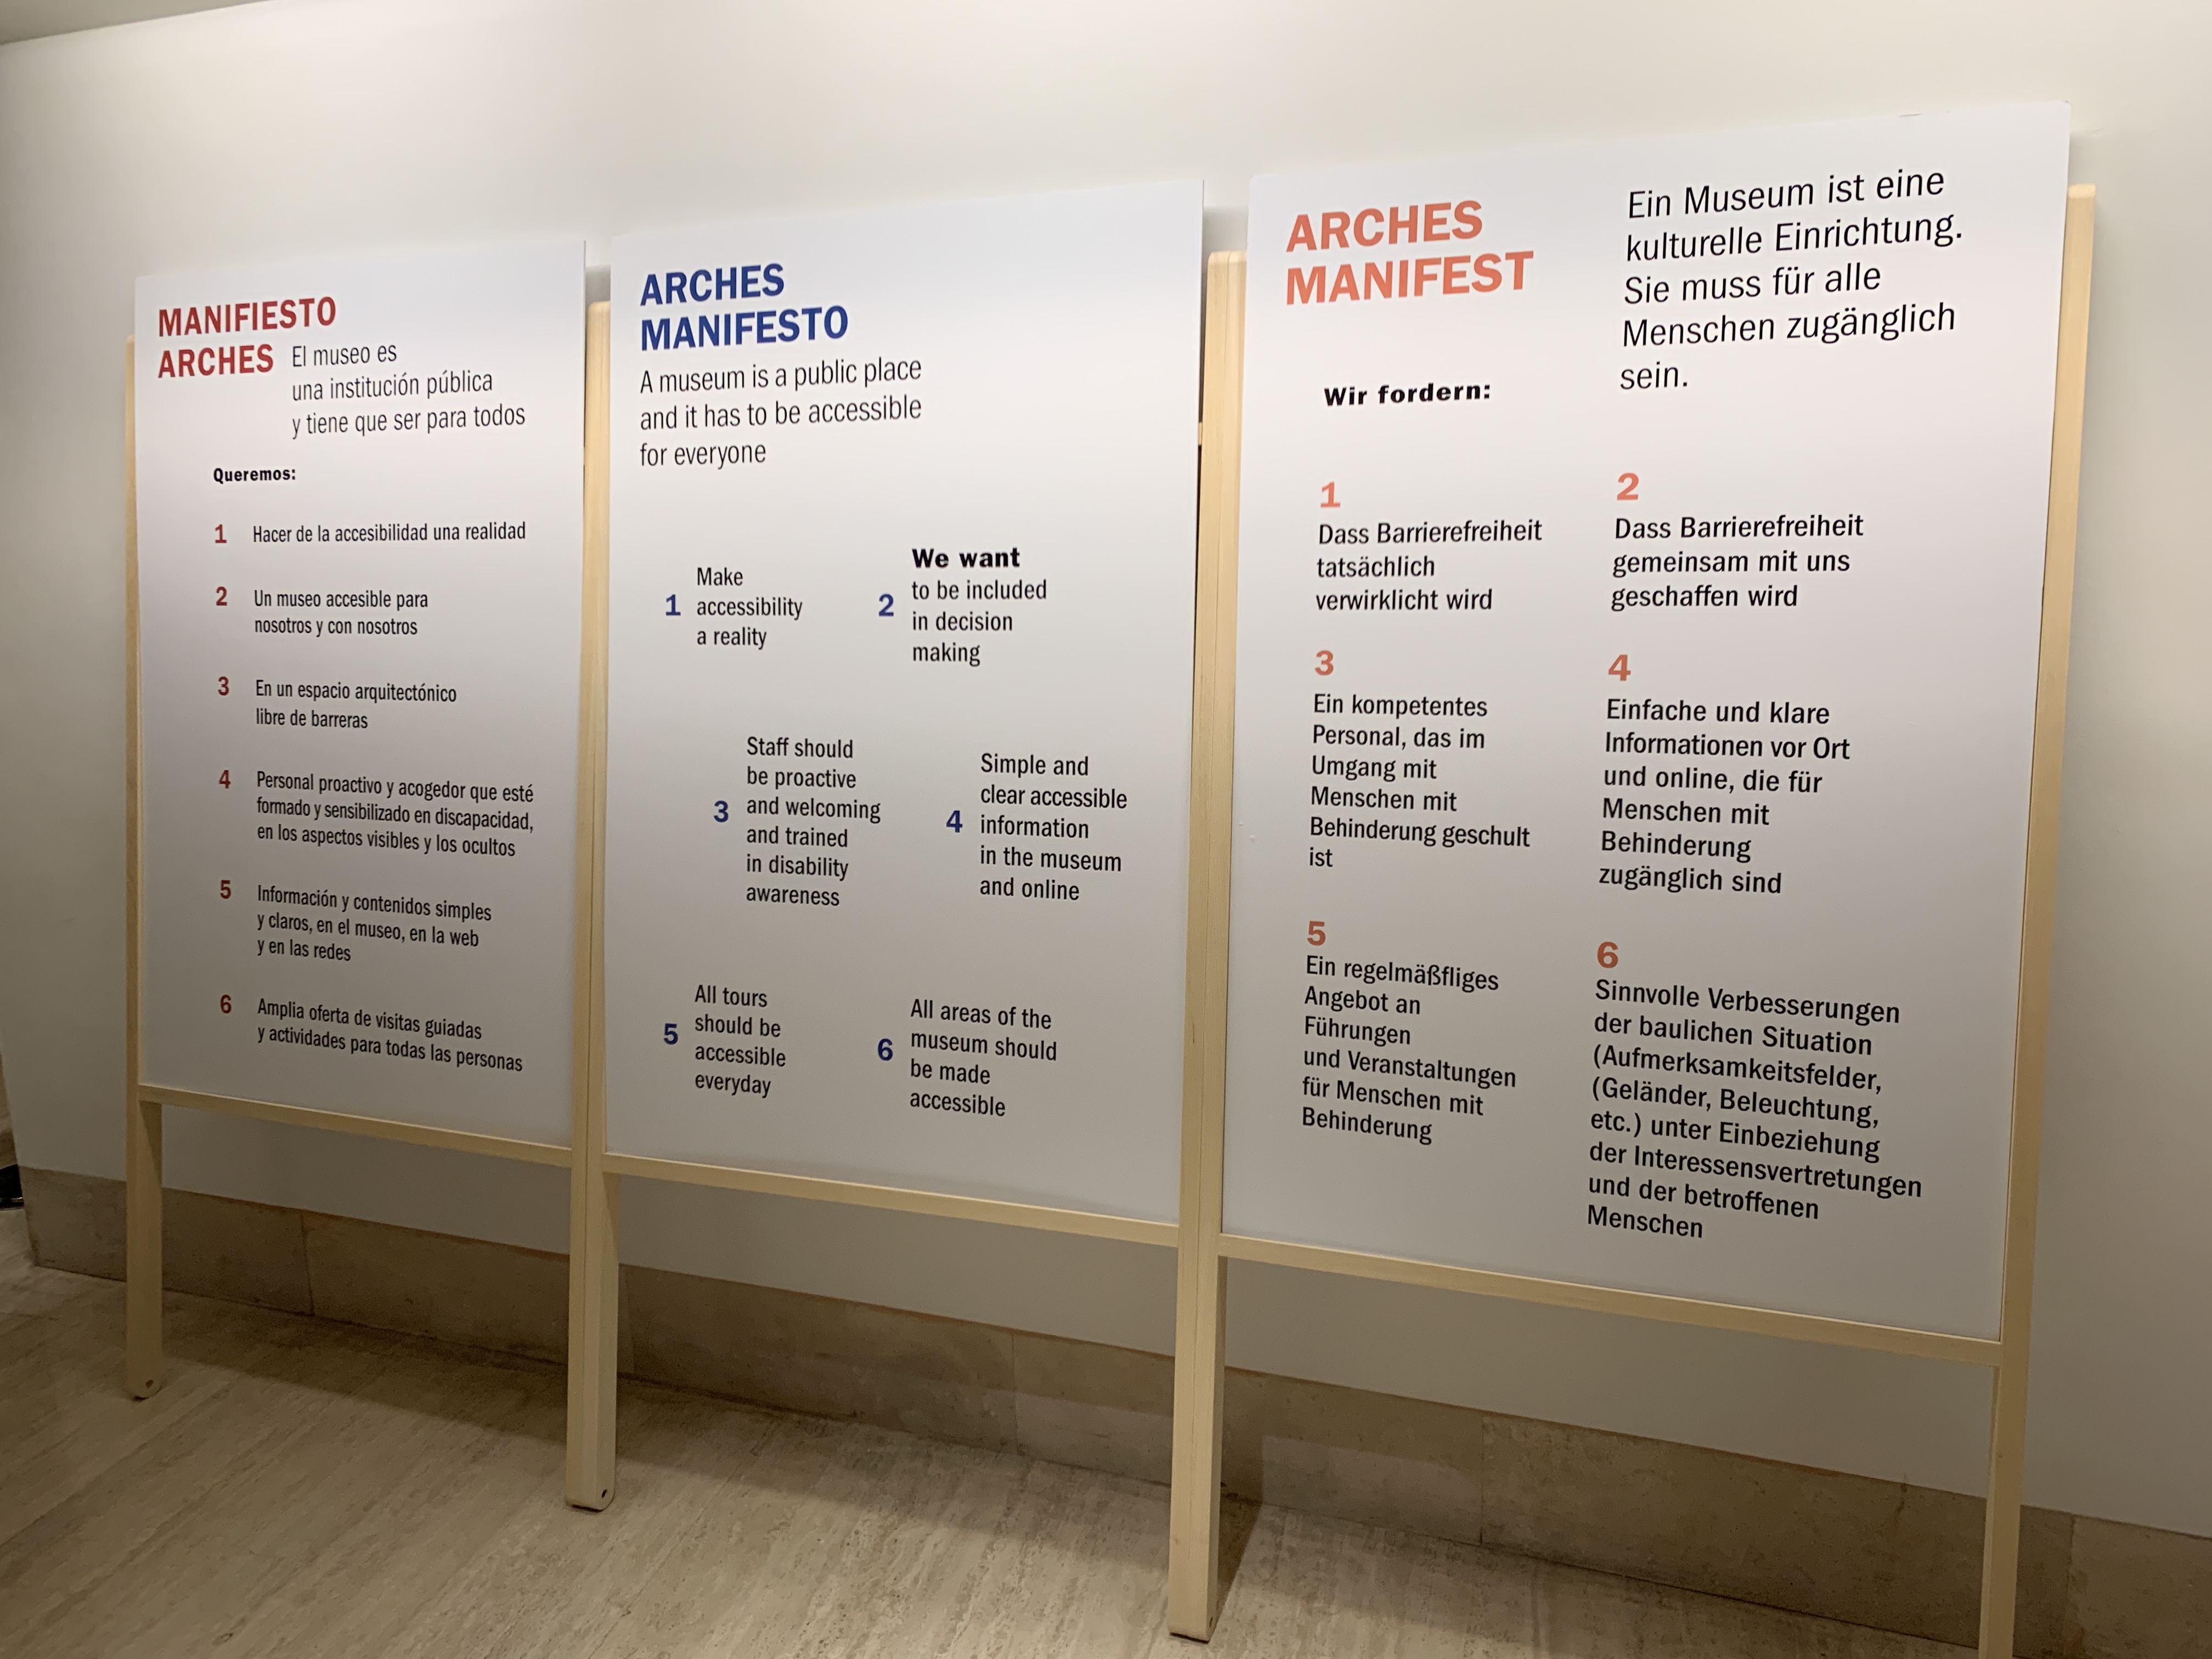 The ARCHES Manifestos in three languages